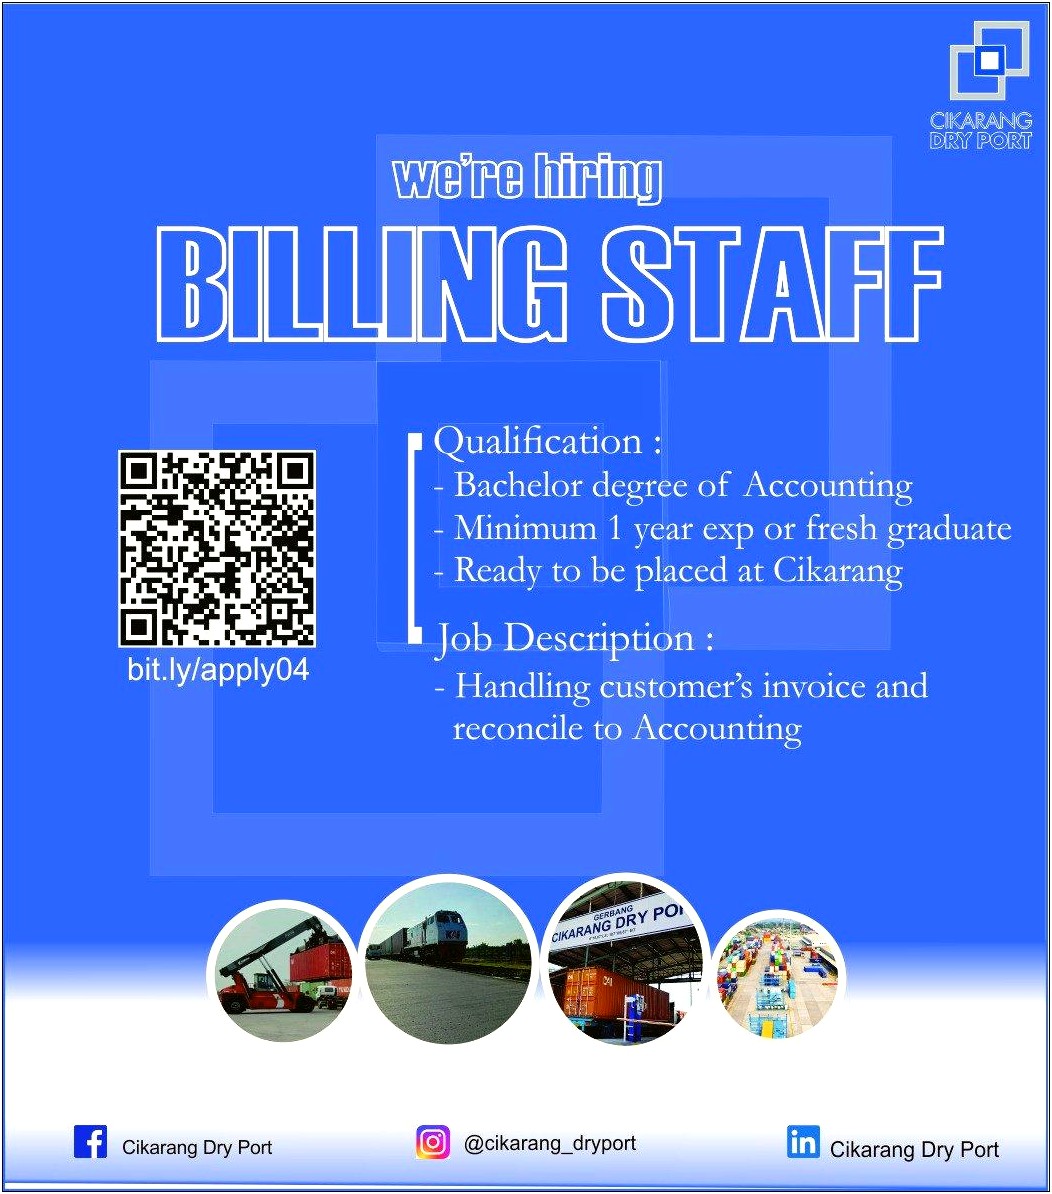 Billing Accountant Job Description Resume